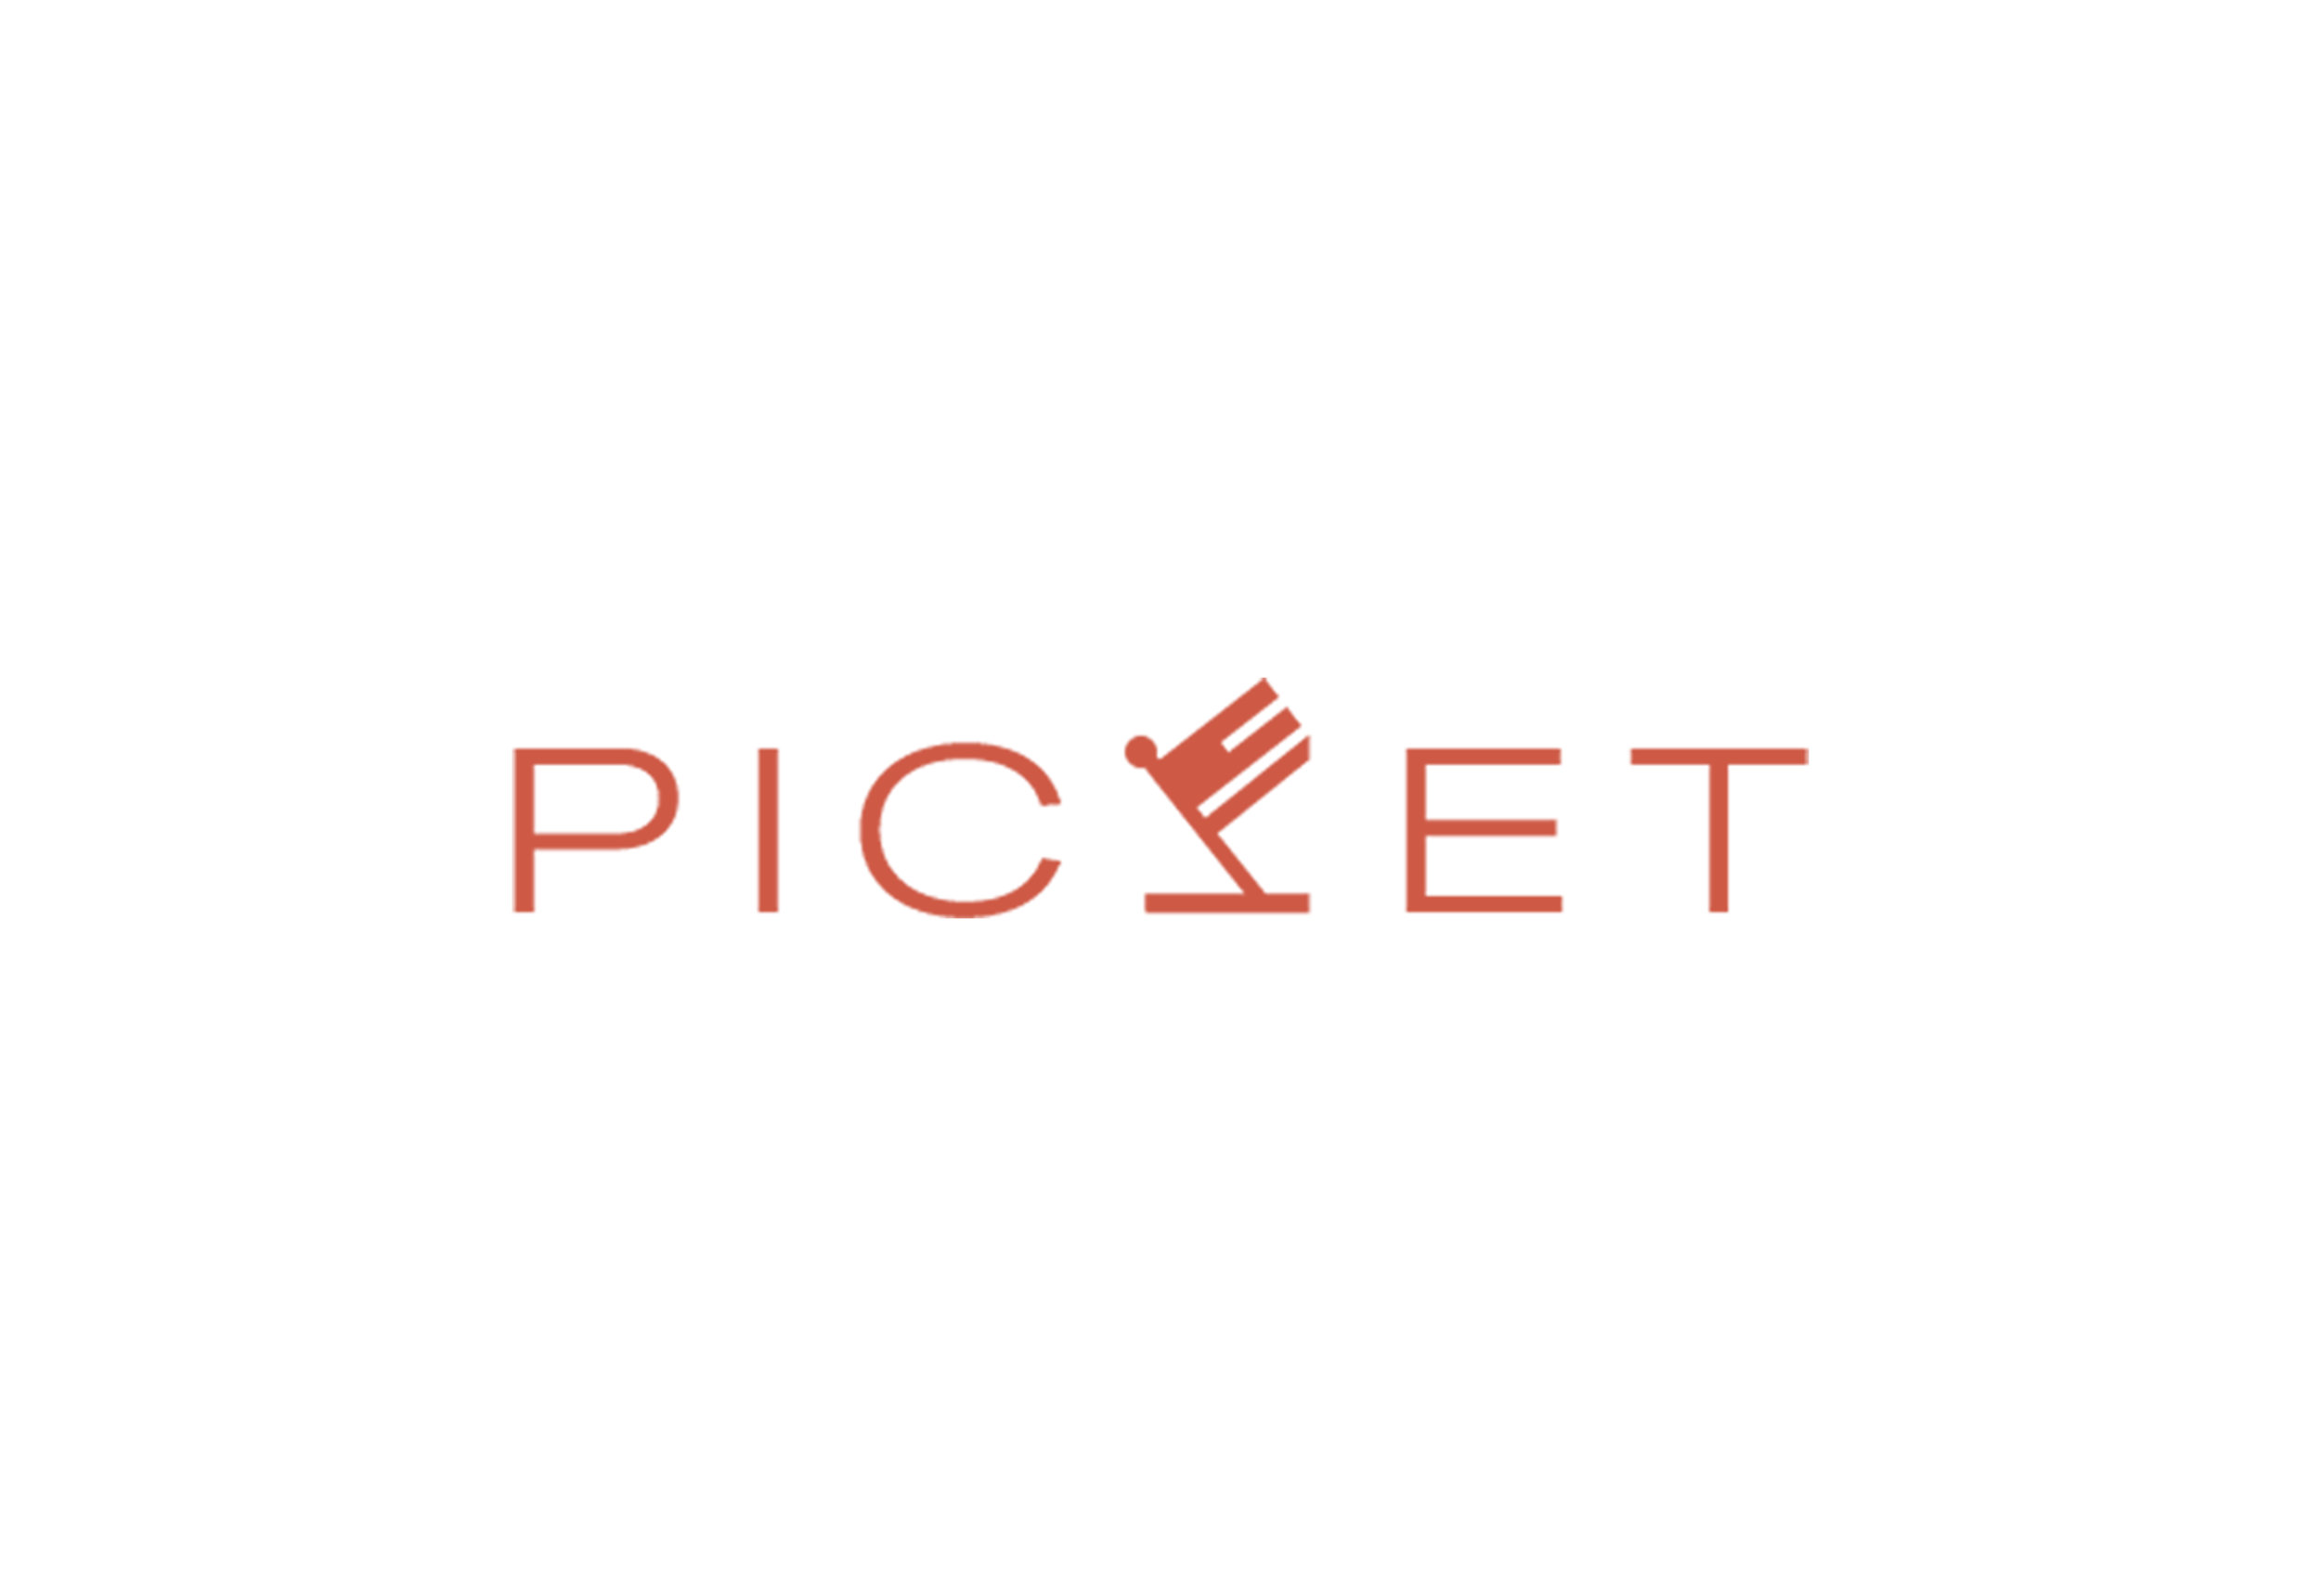 Picket logo.jpg